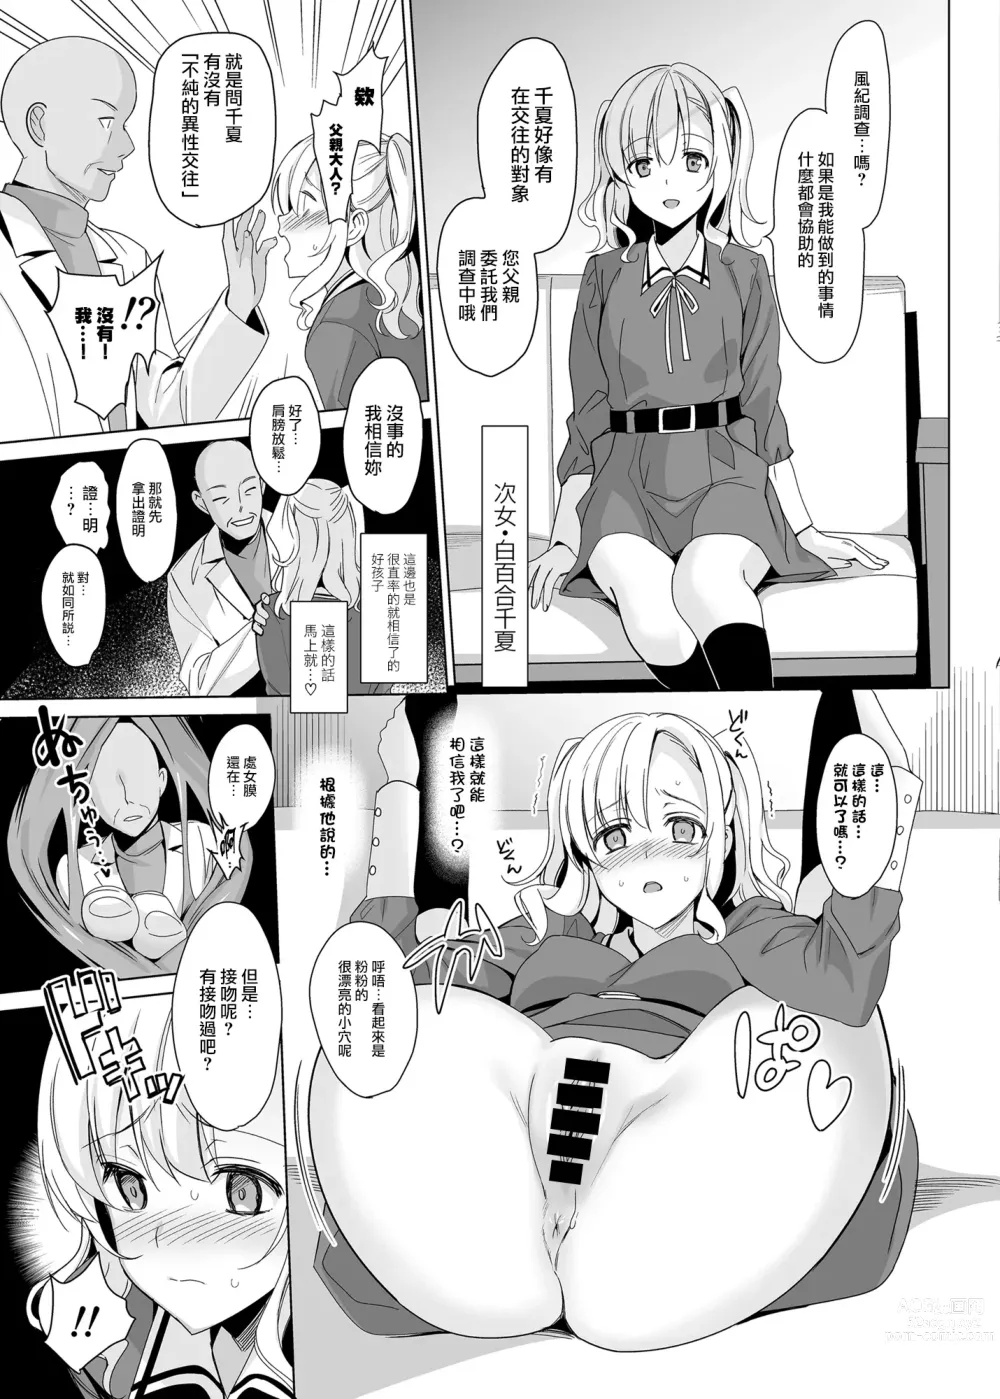 Page 23 of manga 白百合姉妹攻略総集編